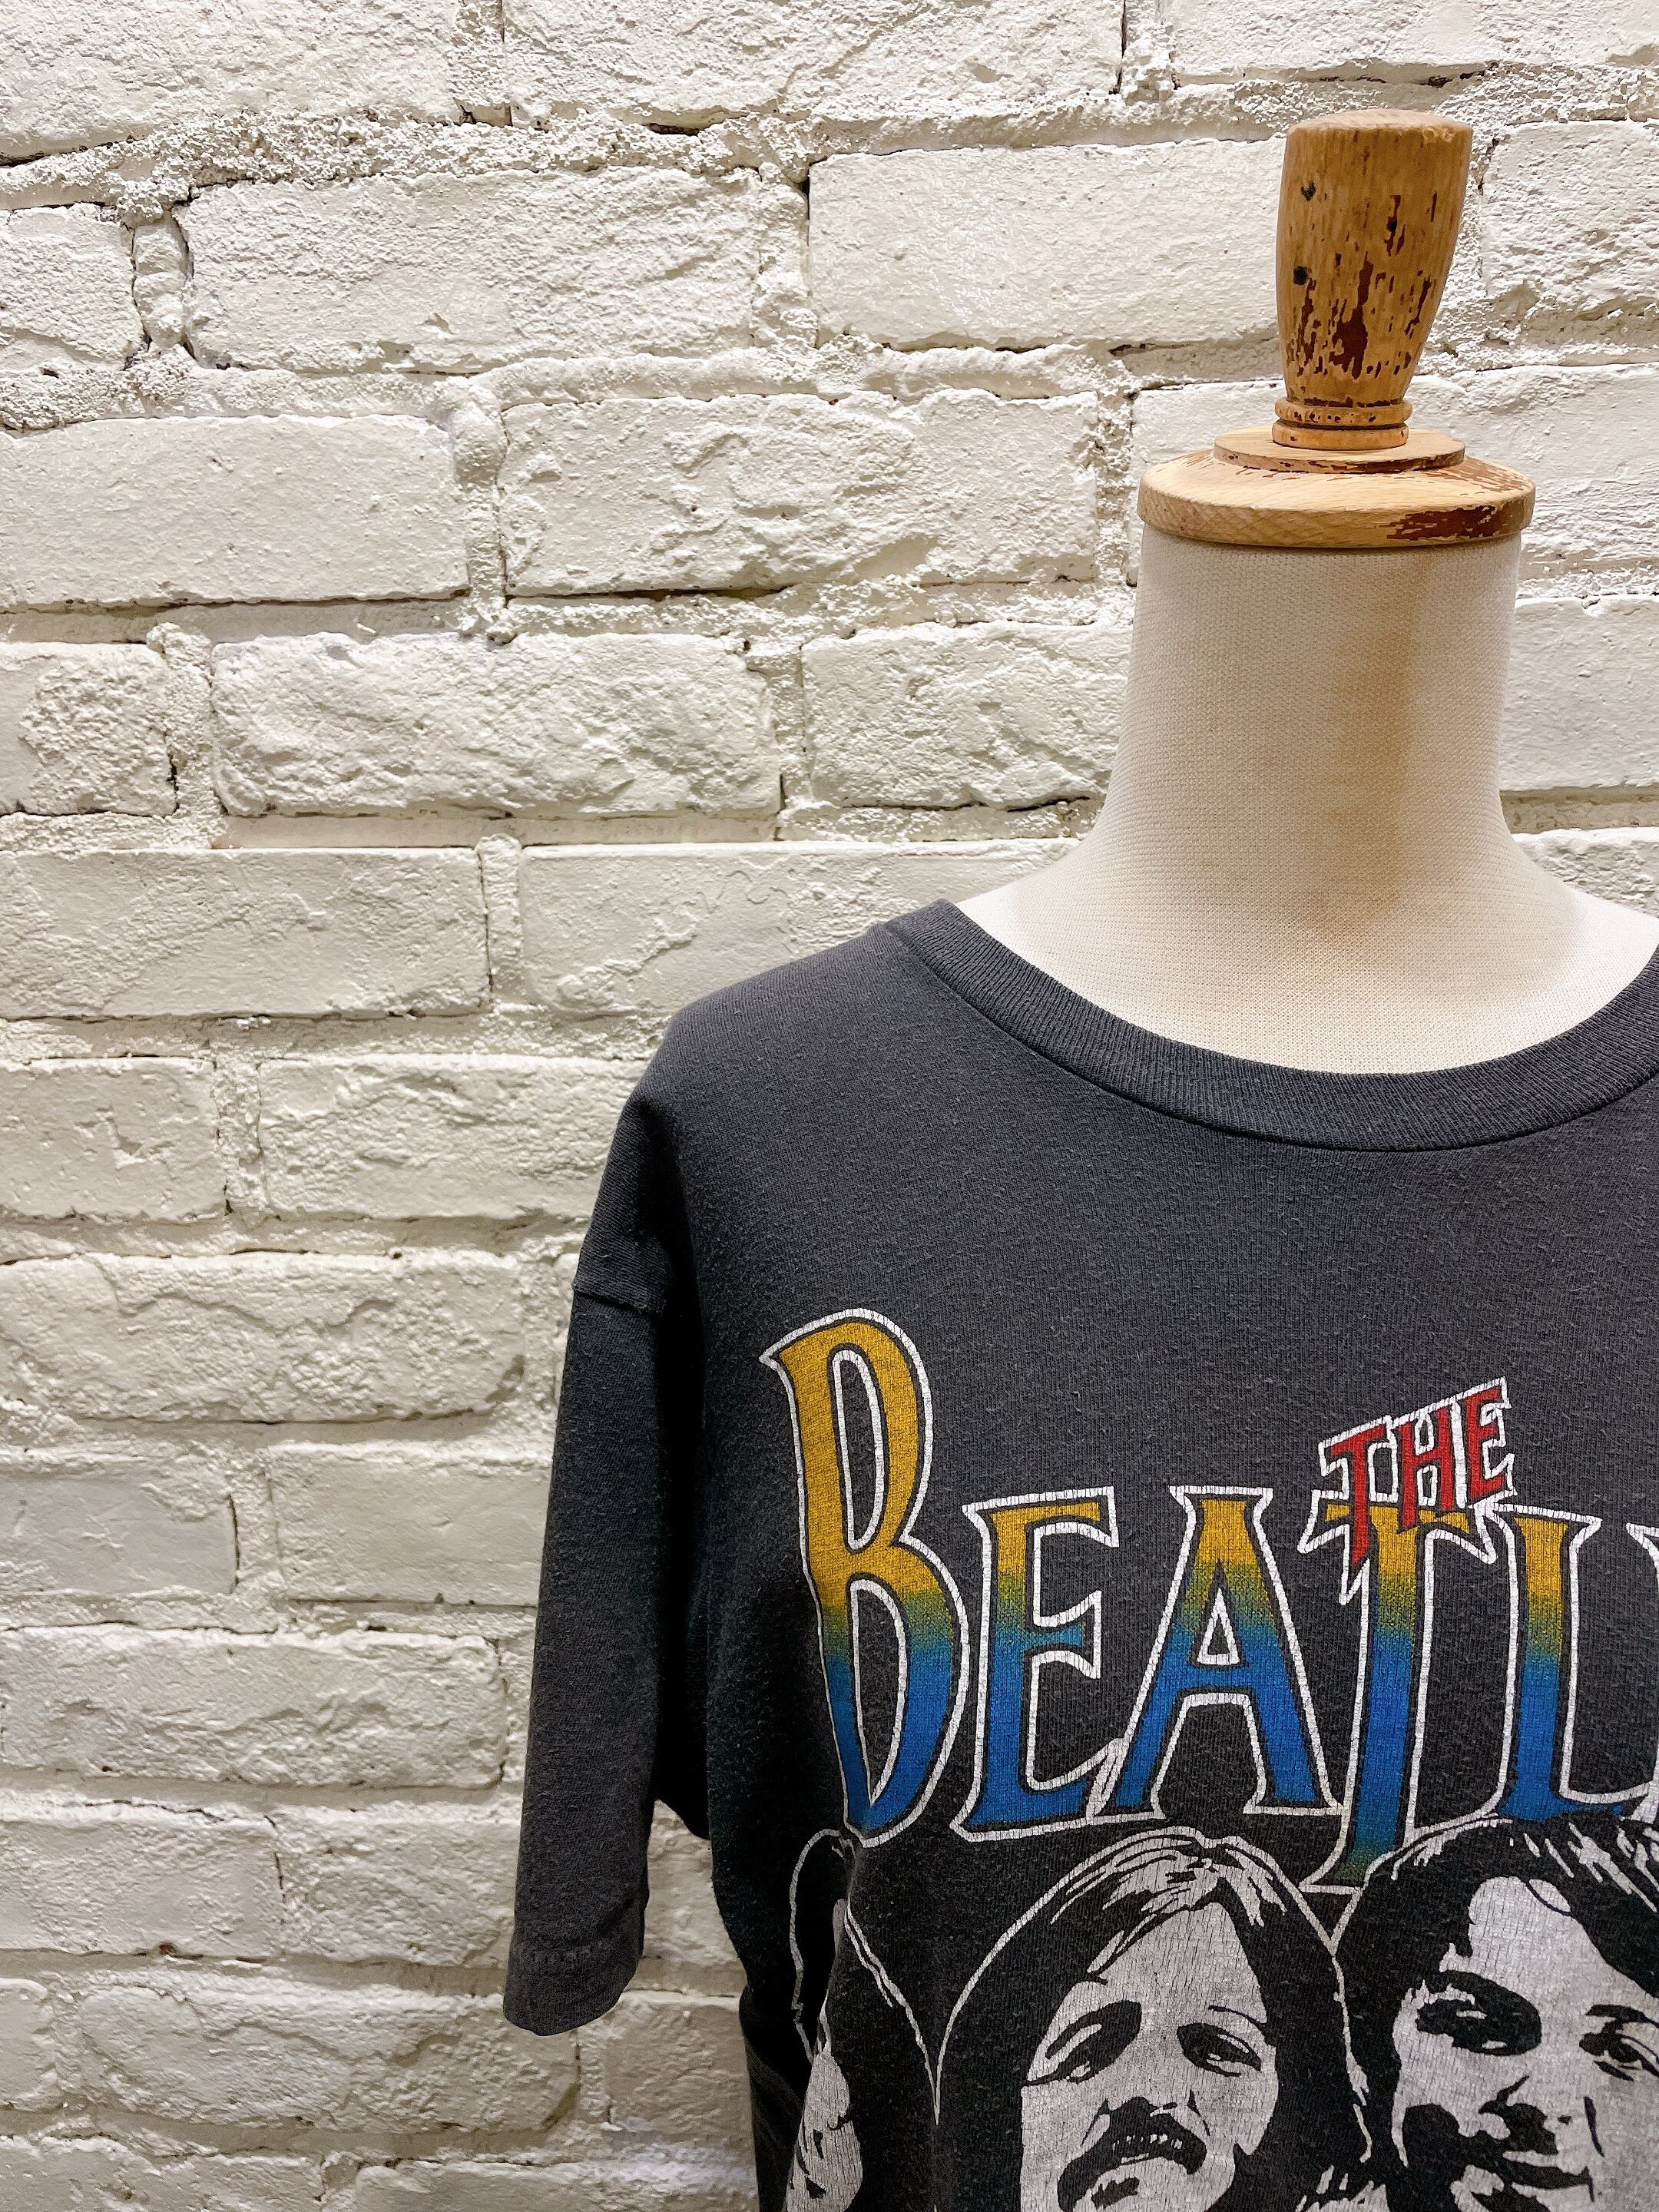 80年代 THE BEATLES ヴィンテージプリントTシャツ ビートルズ | Used & Vintage Clothing 『Lanp by  VALON』 powered by BASE